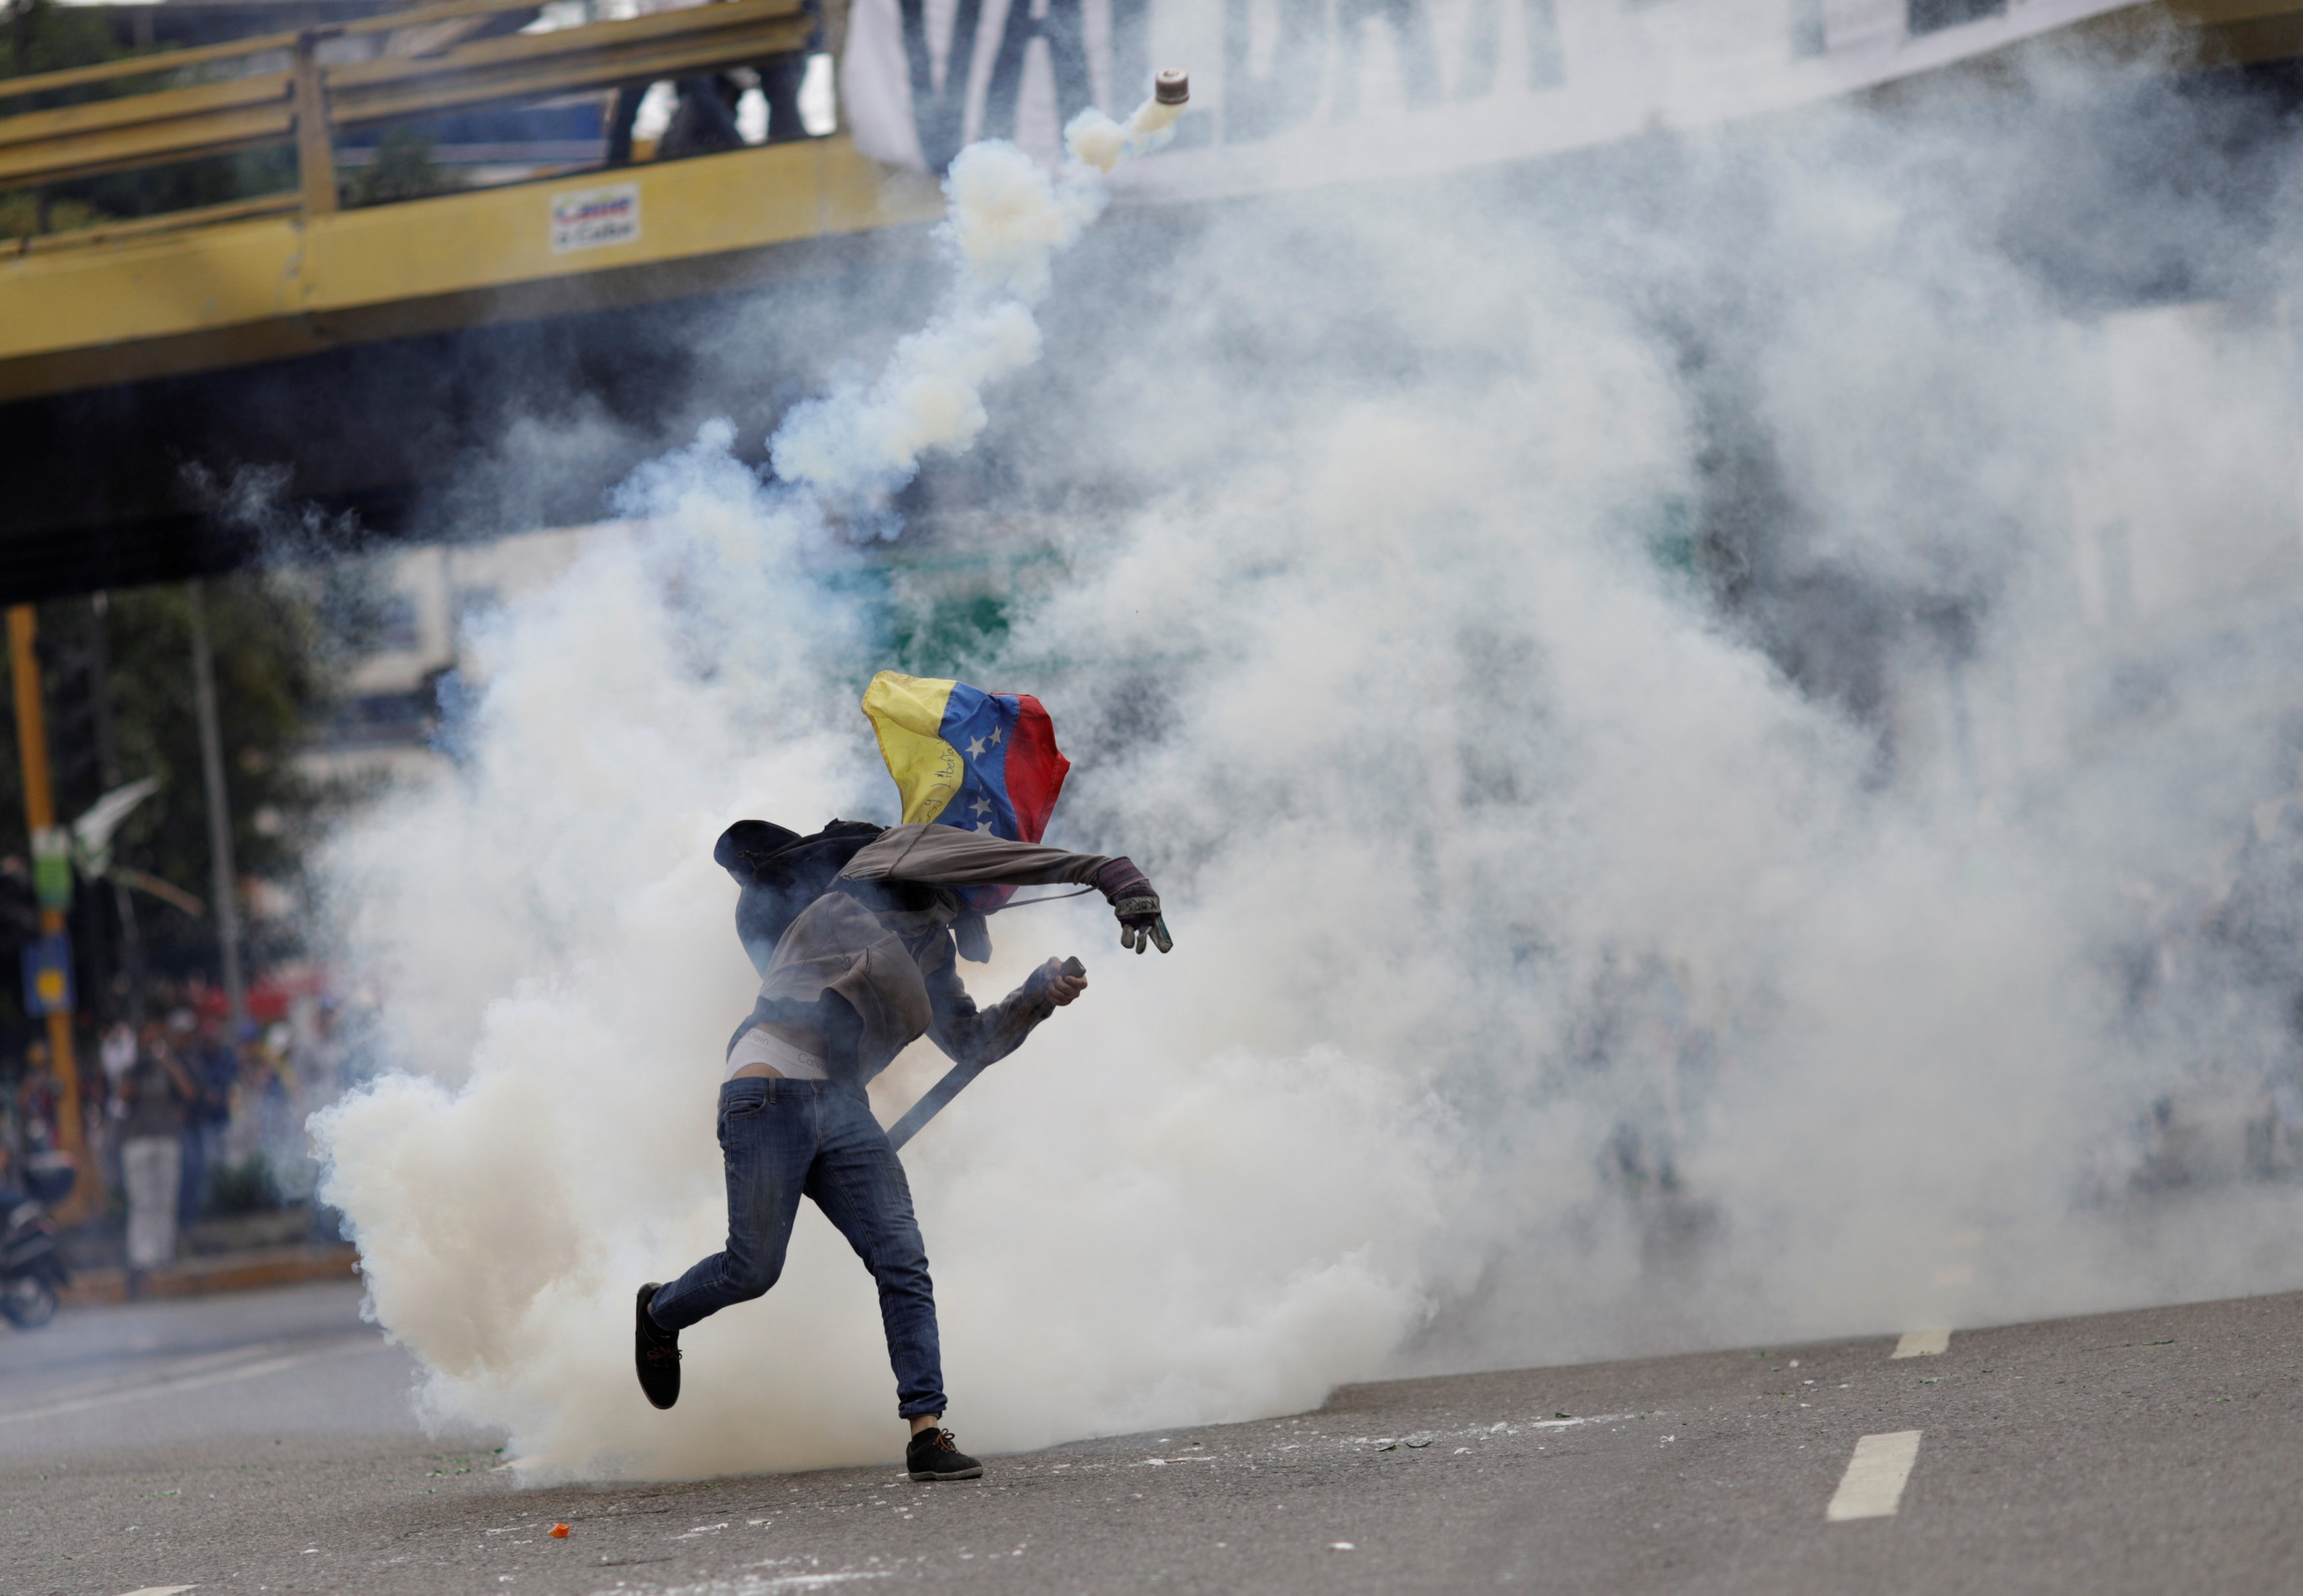 العنف في فنزويلا